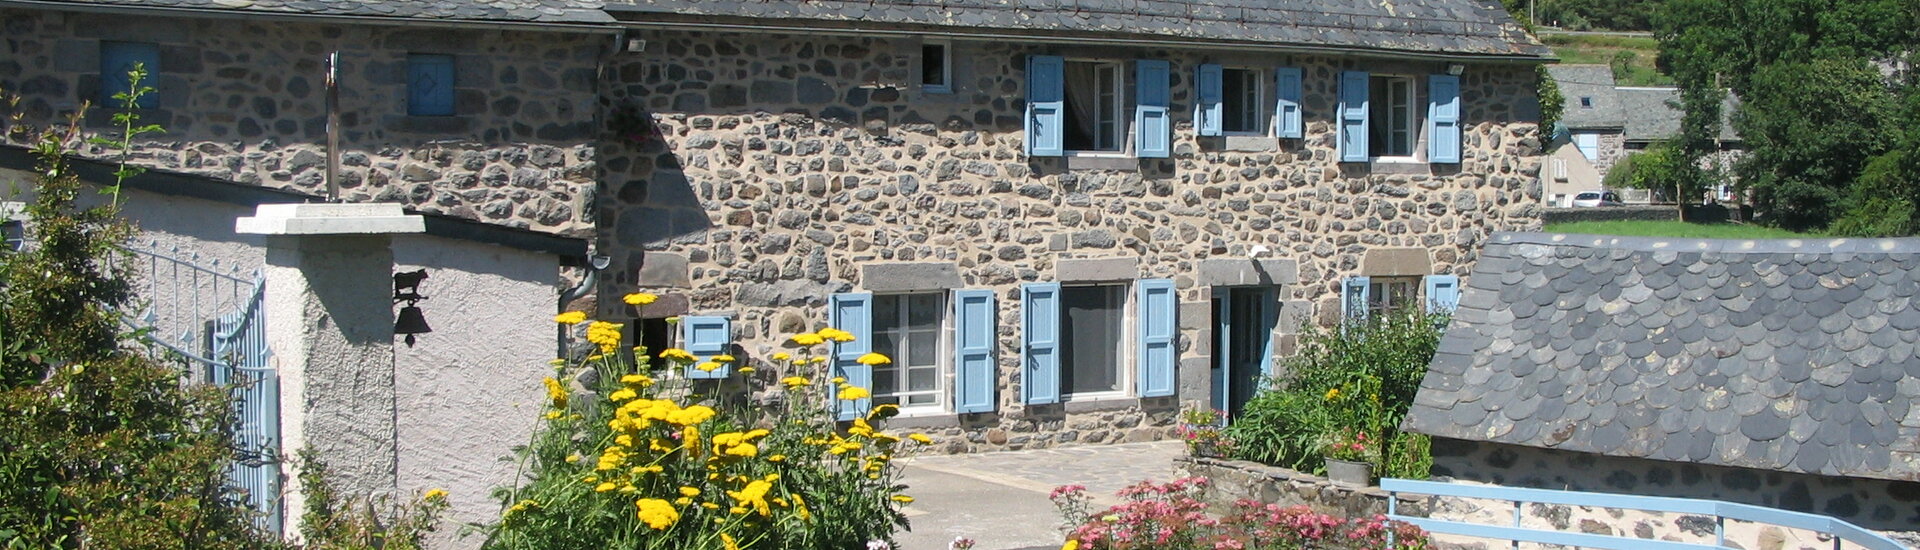 Gîte Cantal Chapelle Alagnon Auvergne Avis Clients